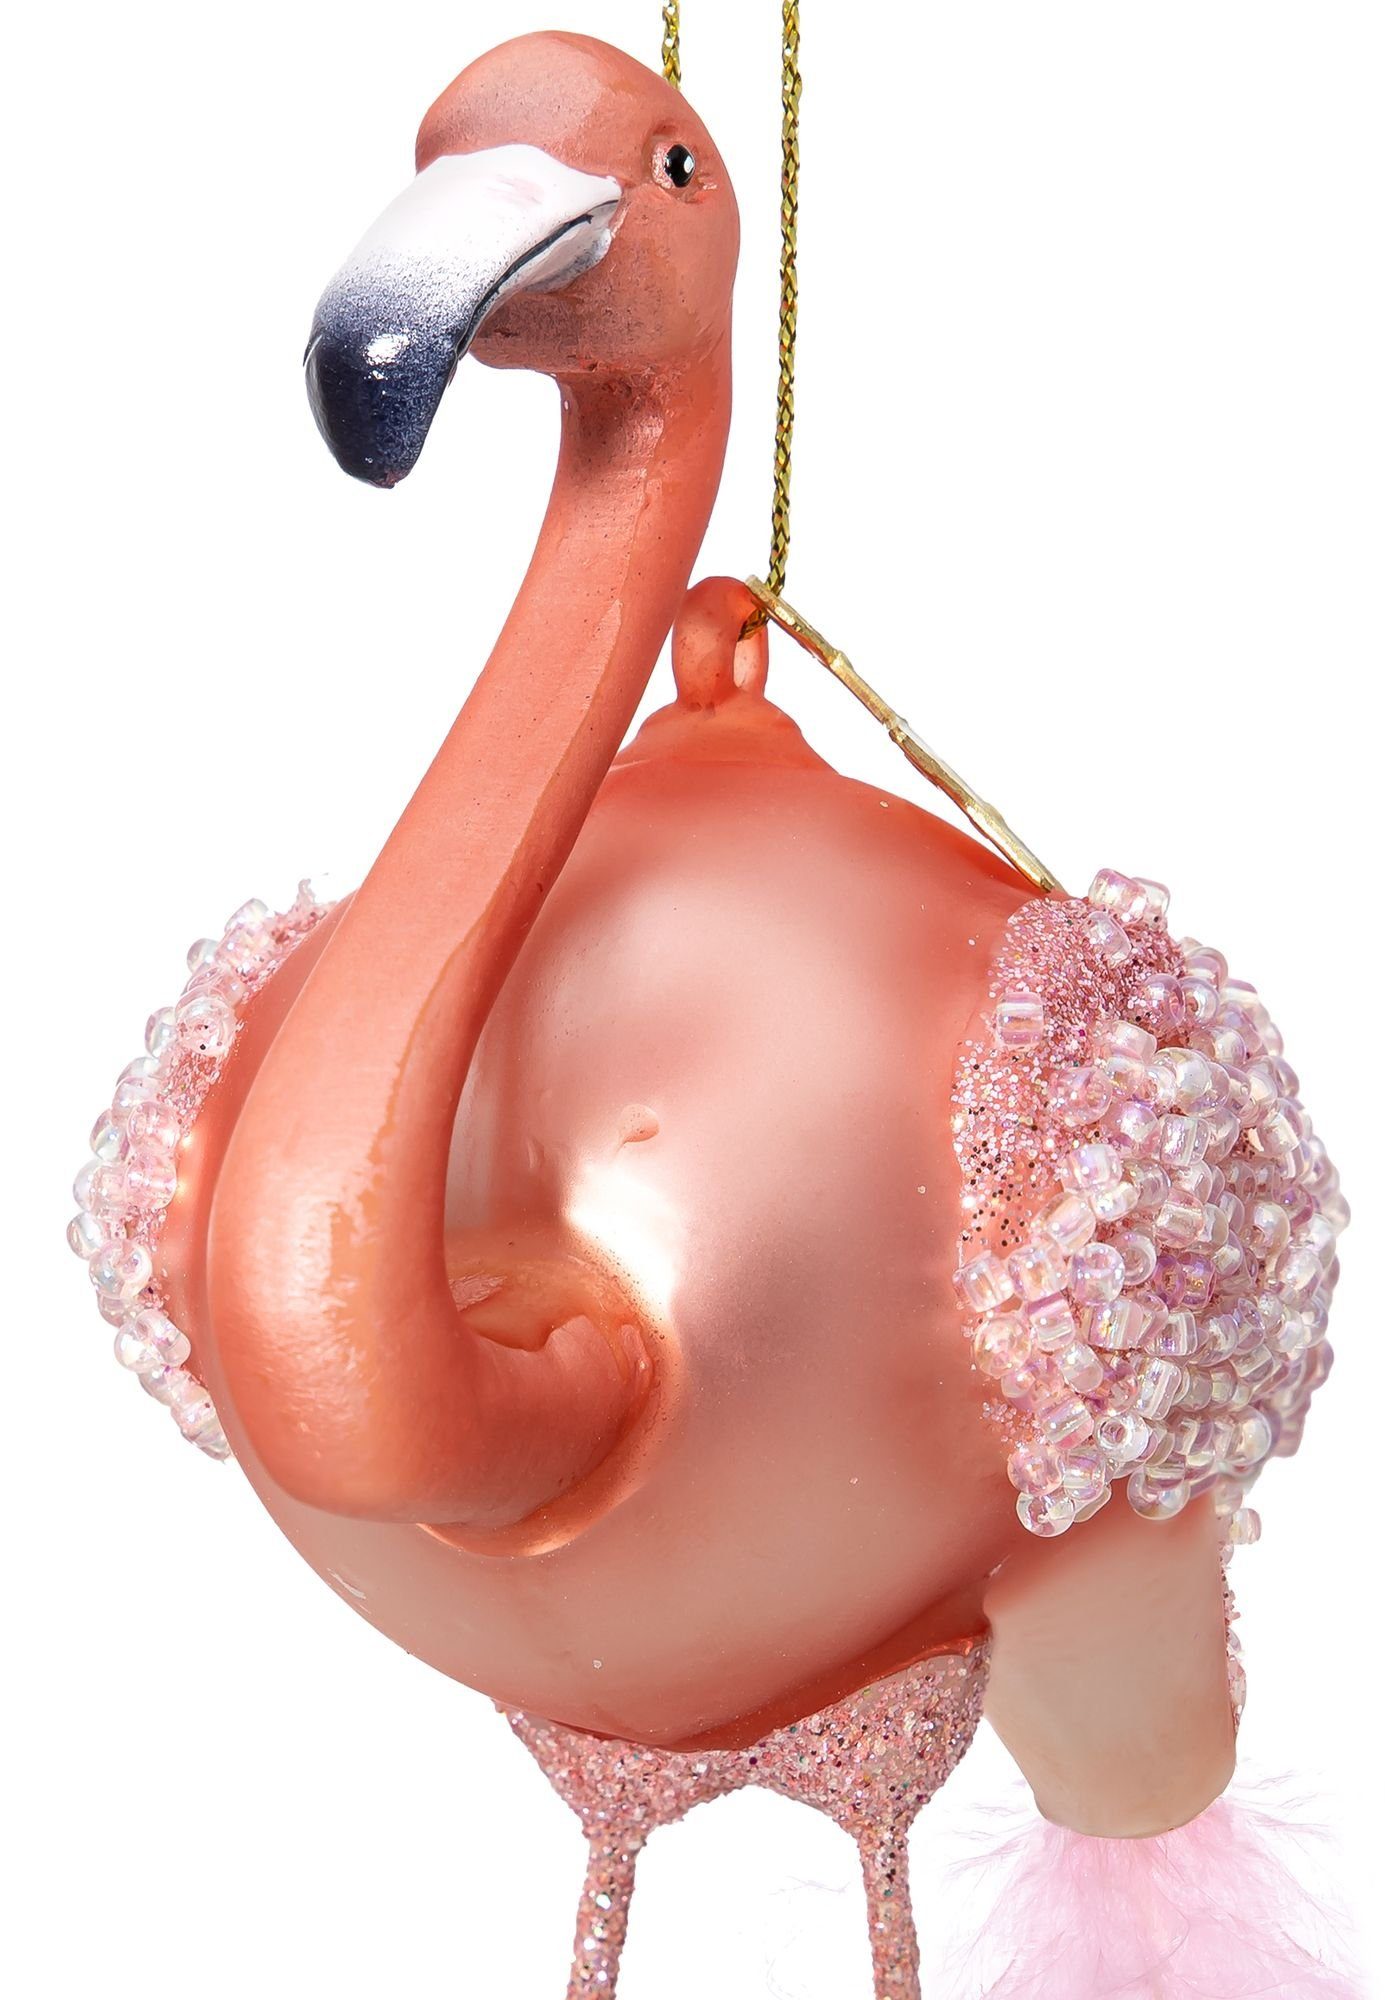 Christbaumschmuck BS551 Weihnachtsbaum Flamingo Anhänger SIKORA Figur Glas